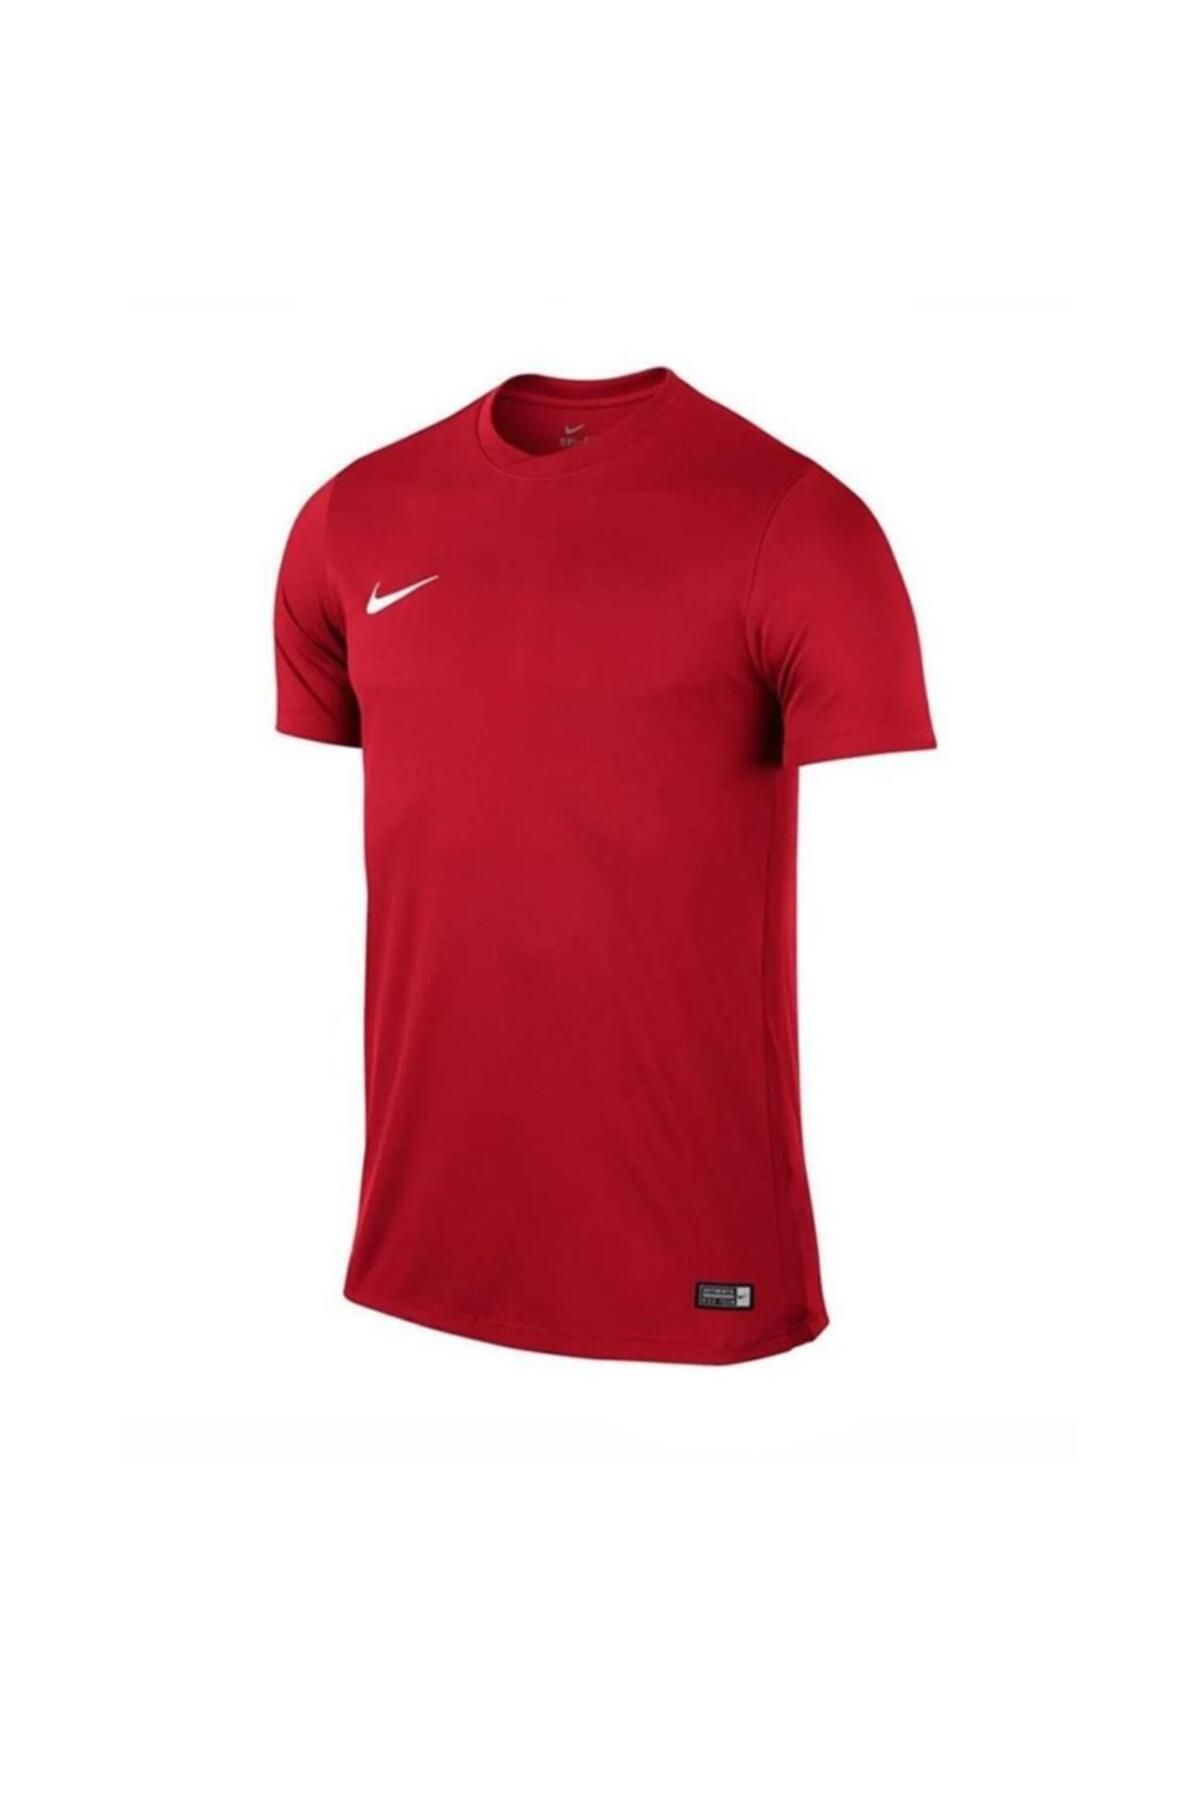 Nike 725891 Ss Park Vı Jsy T-shirt Kırmızı